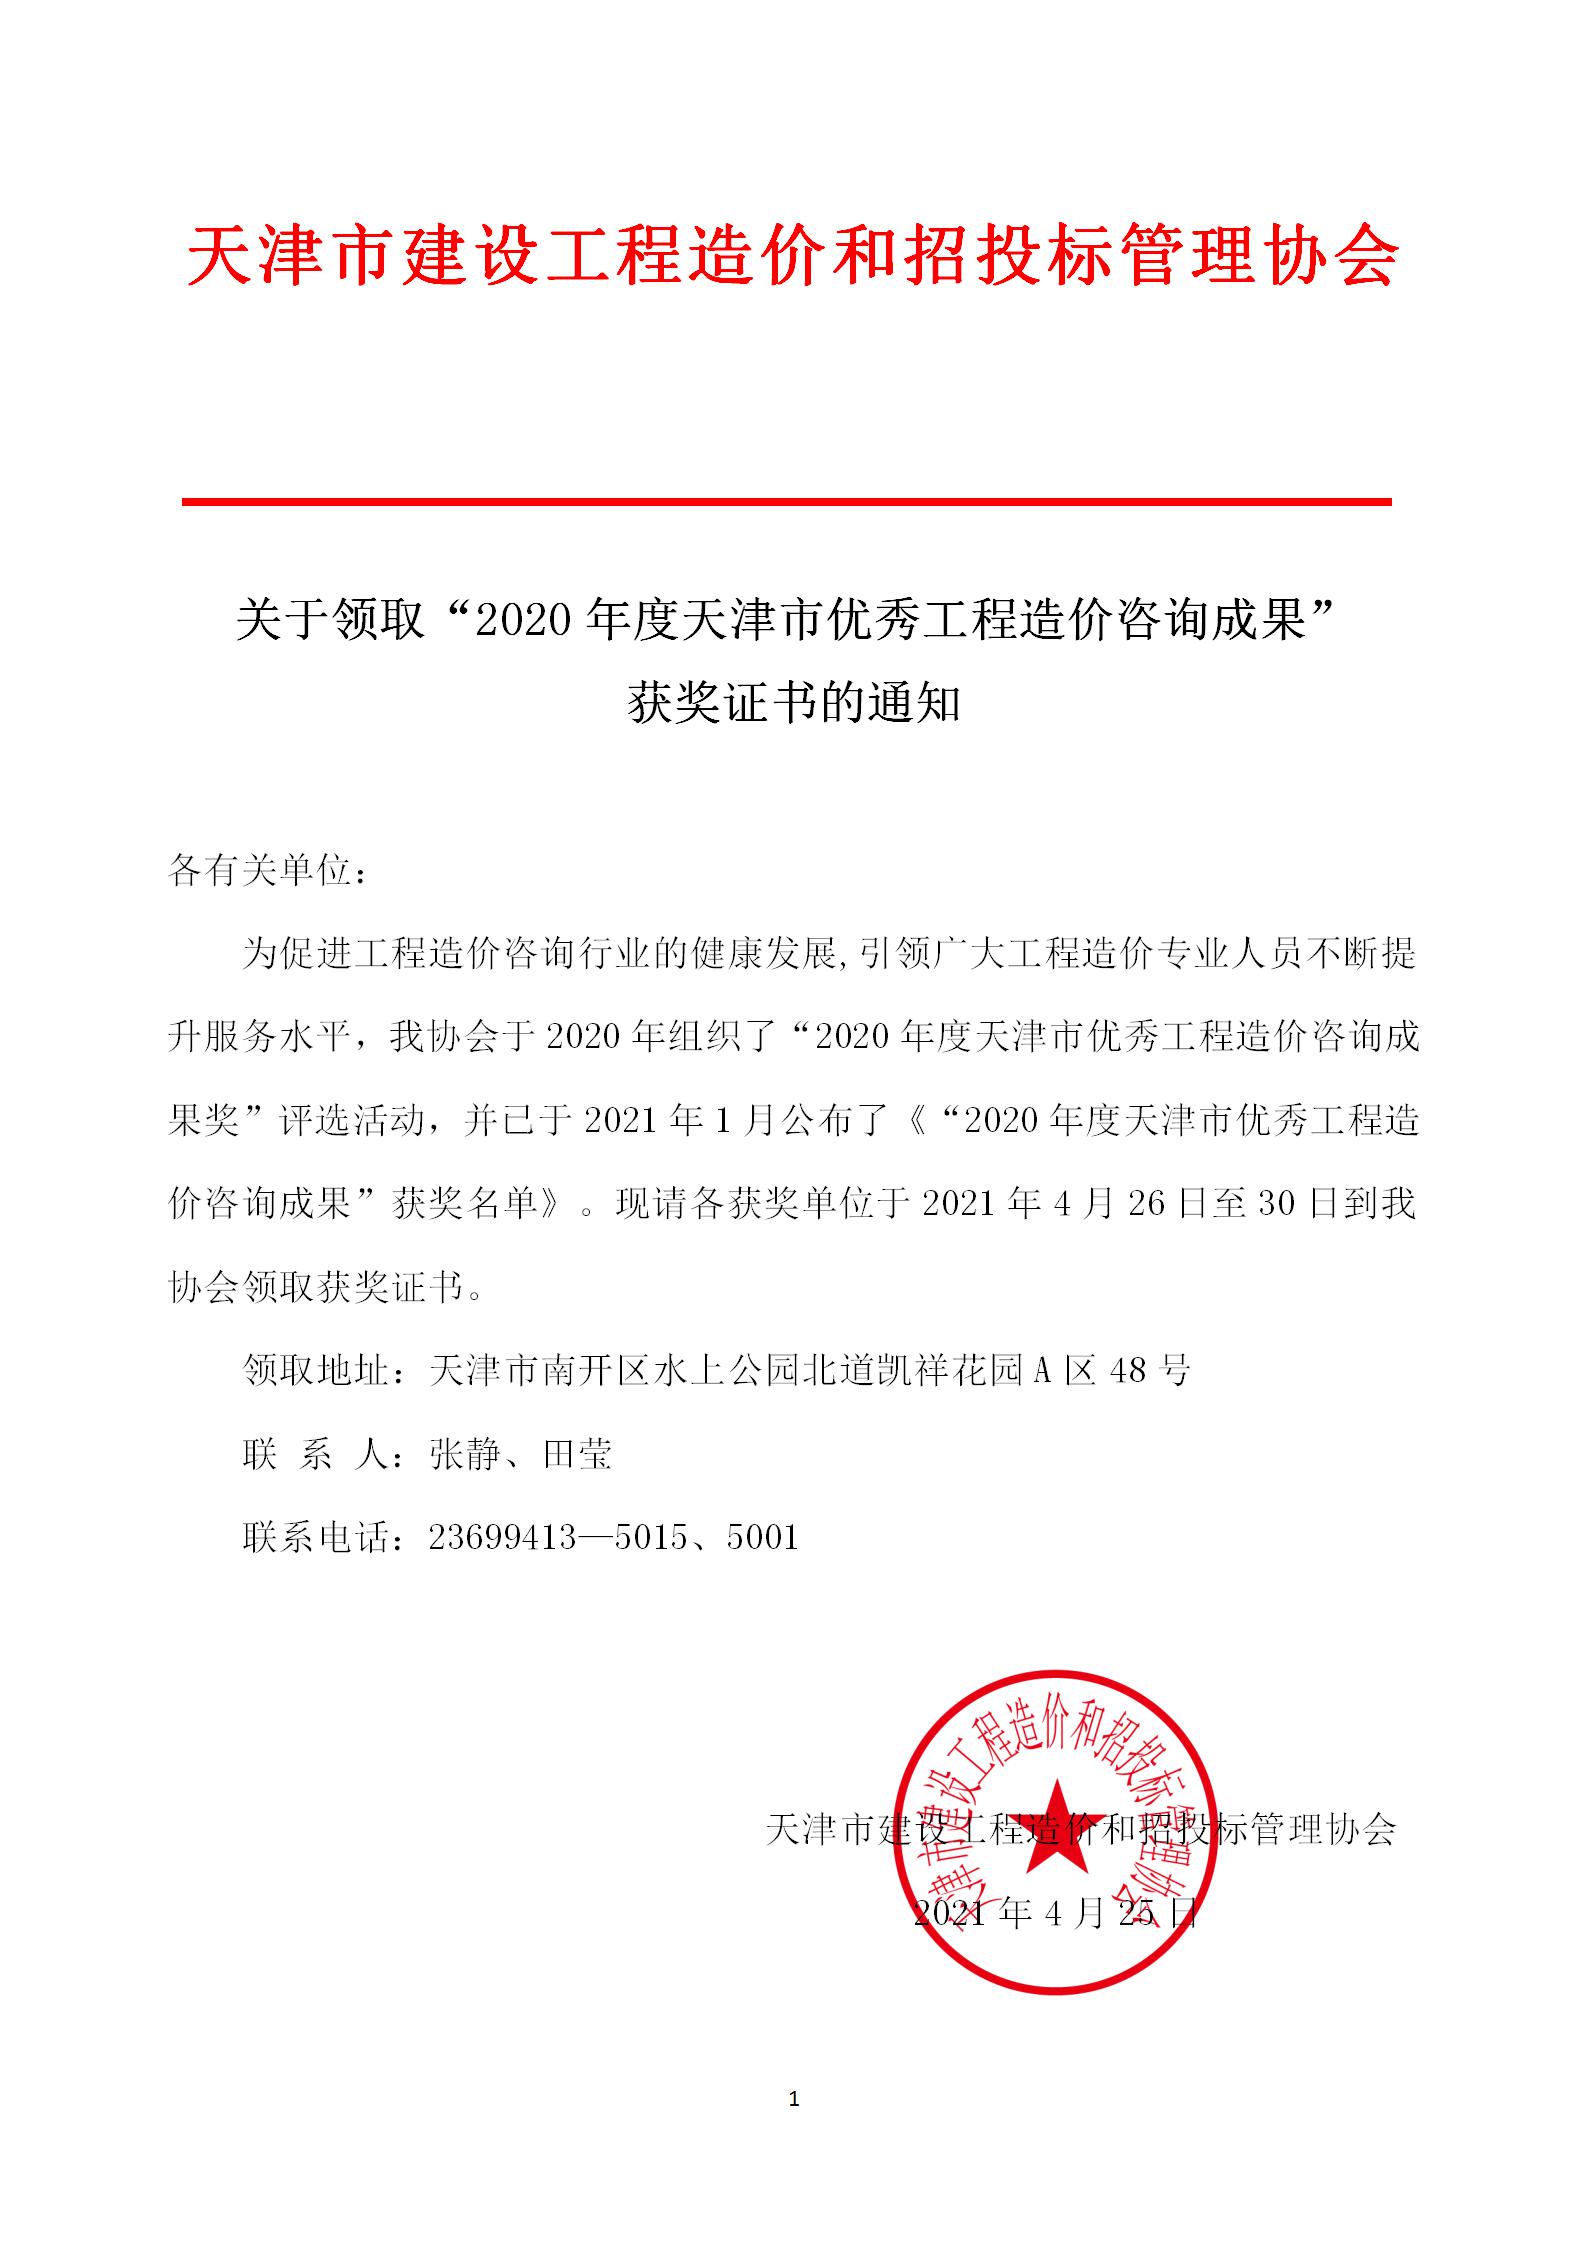 关于领取“2020年度天津市优秀工程造价咨询成果”获奖证书的通.jpg